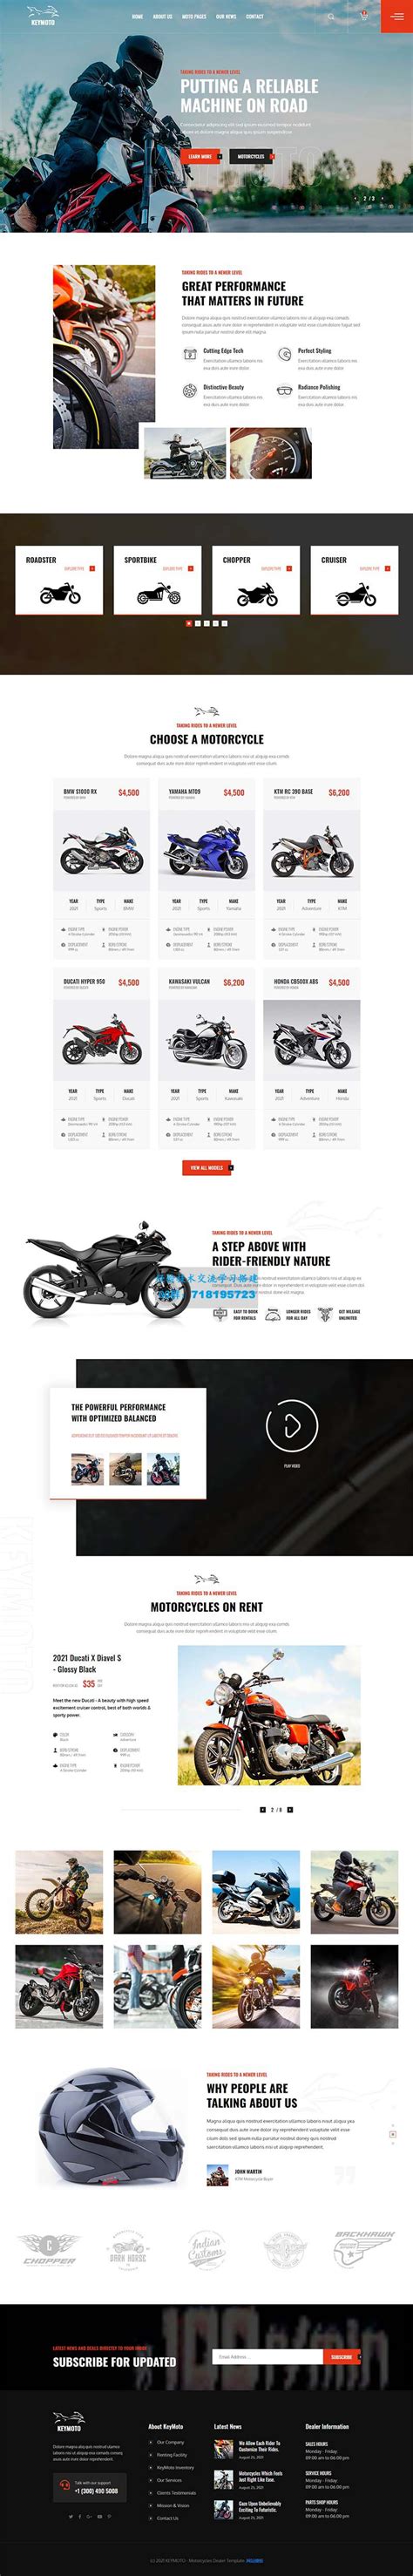 高端品牌摩托车销售公司网站HTML5模板-金聪精品